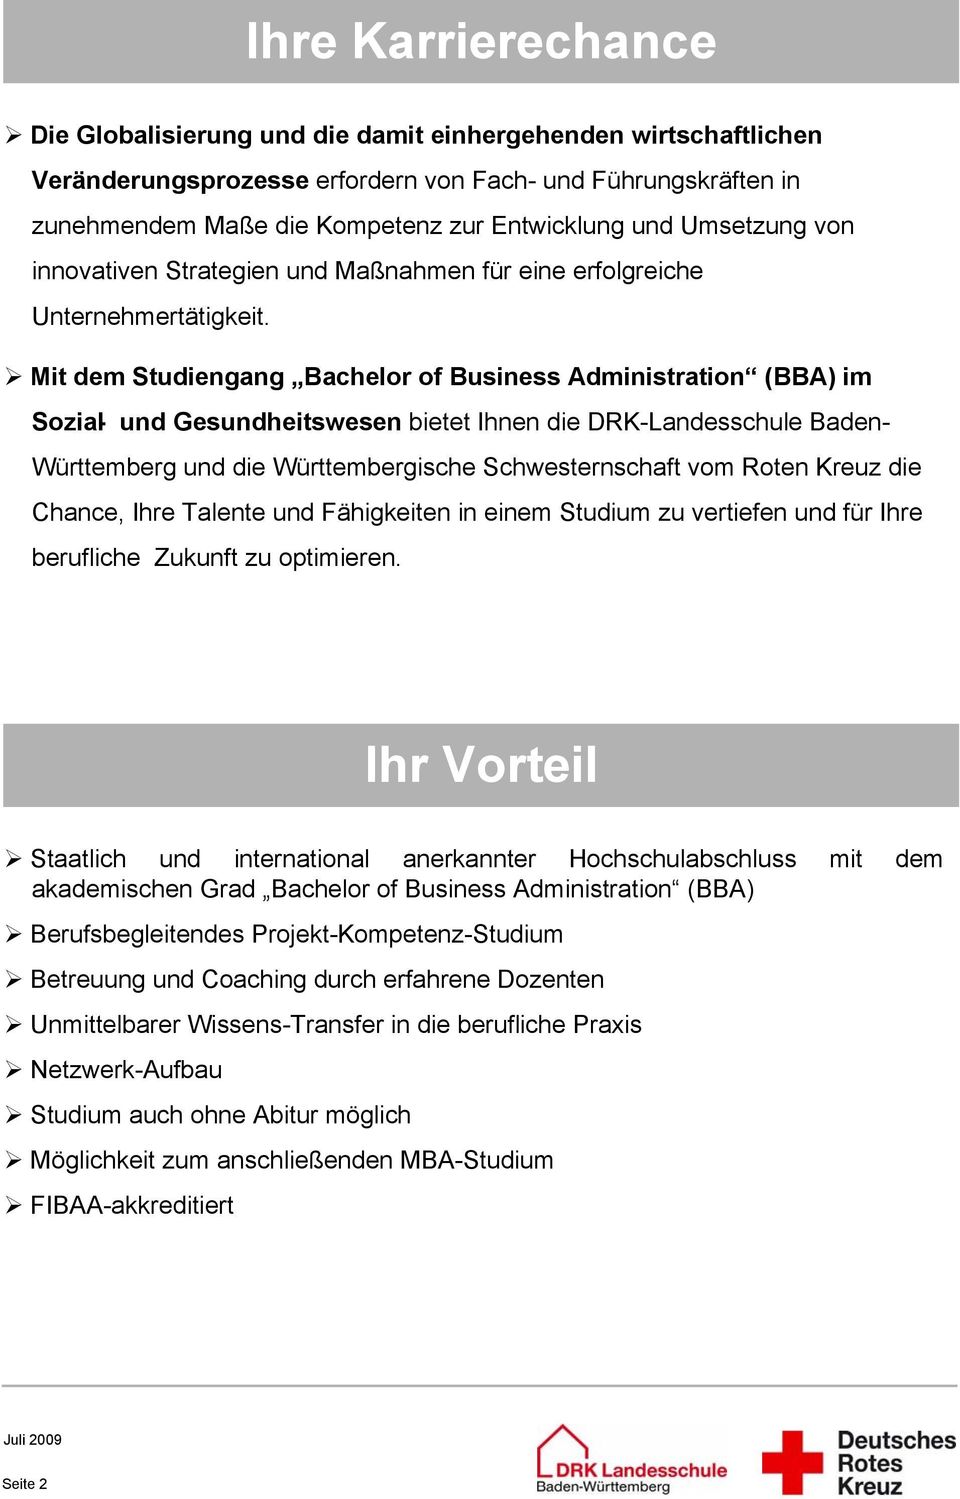 Mit dem Studiengang Bachelor of Business Administration (BBA) im Sozial- und Gesundheitswesen bietet Ihnen die DRK-Landesschule Baden- Württemberg und die Württembergische Schwesternschaft vom Roten